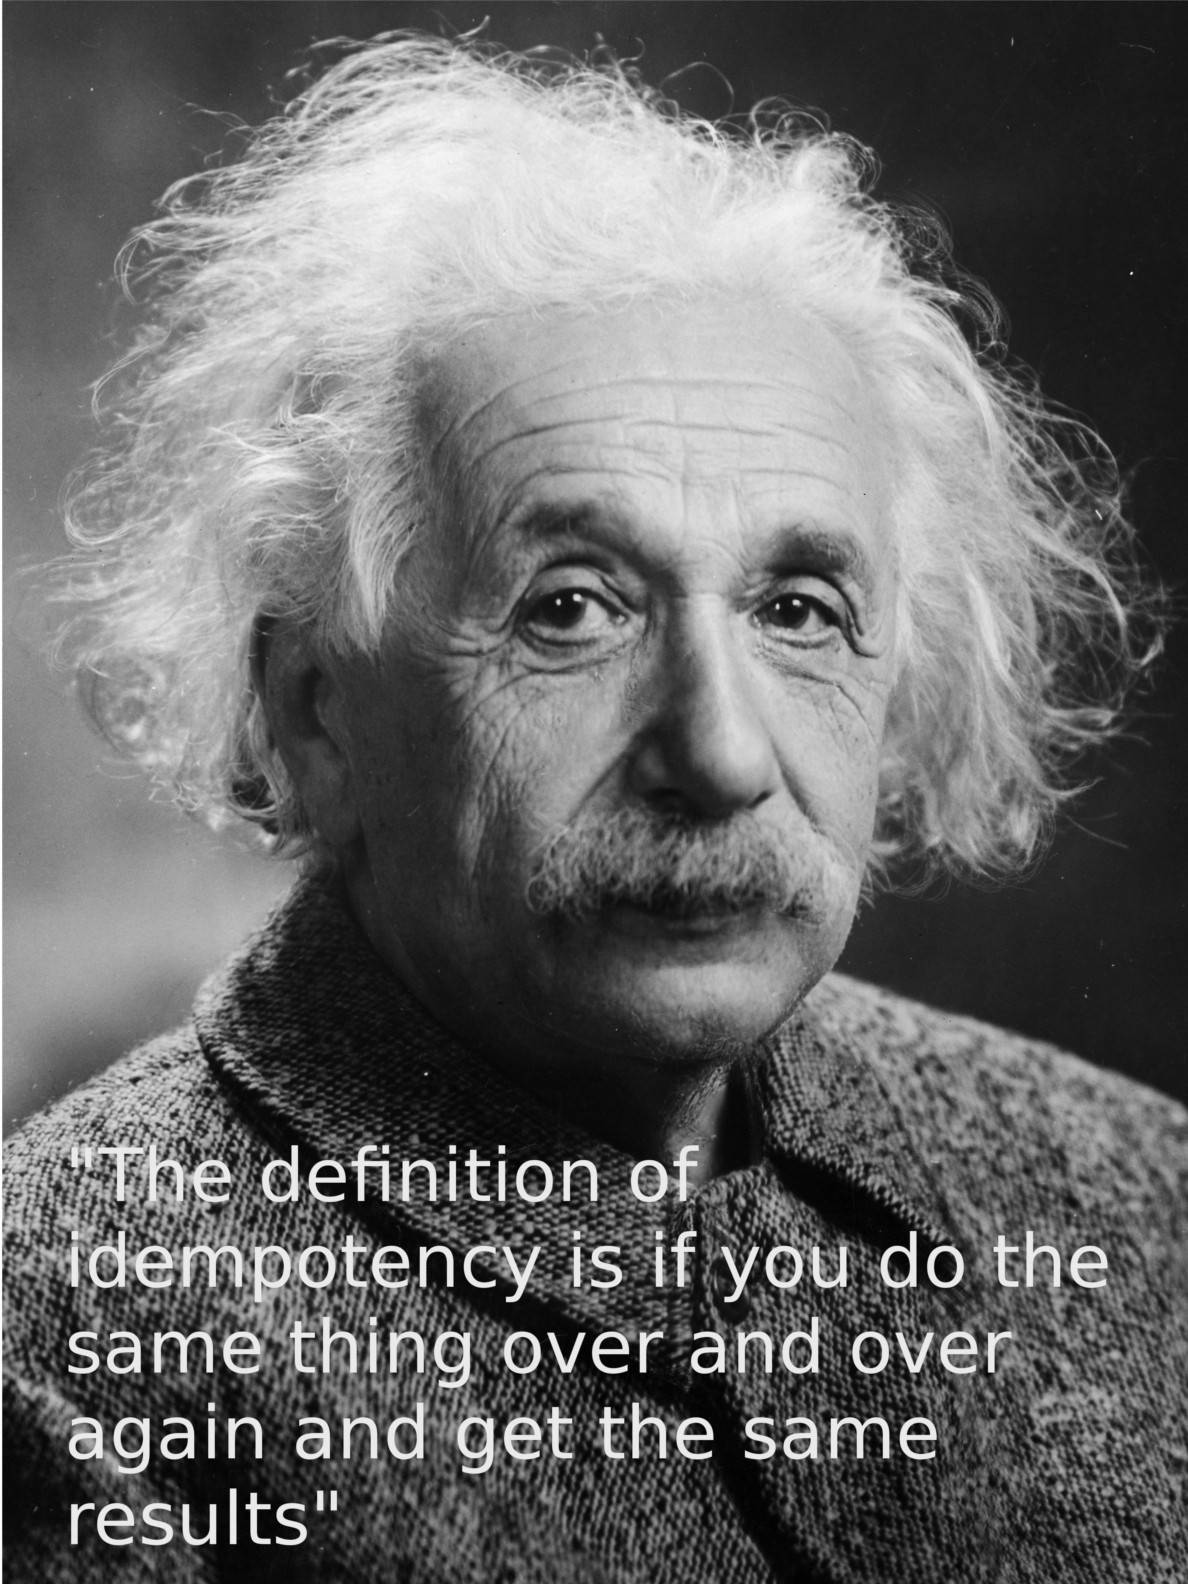 Einsteins definition of indempotency